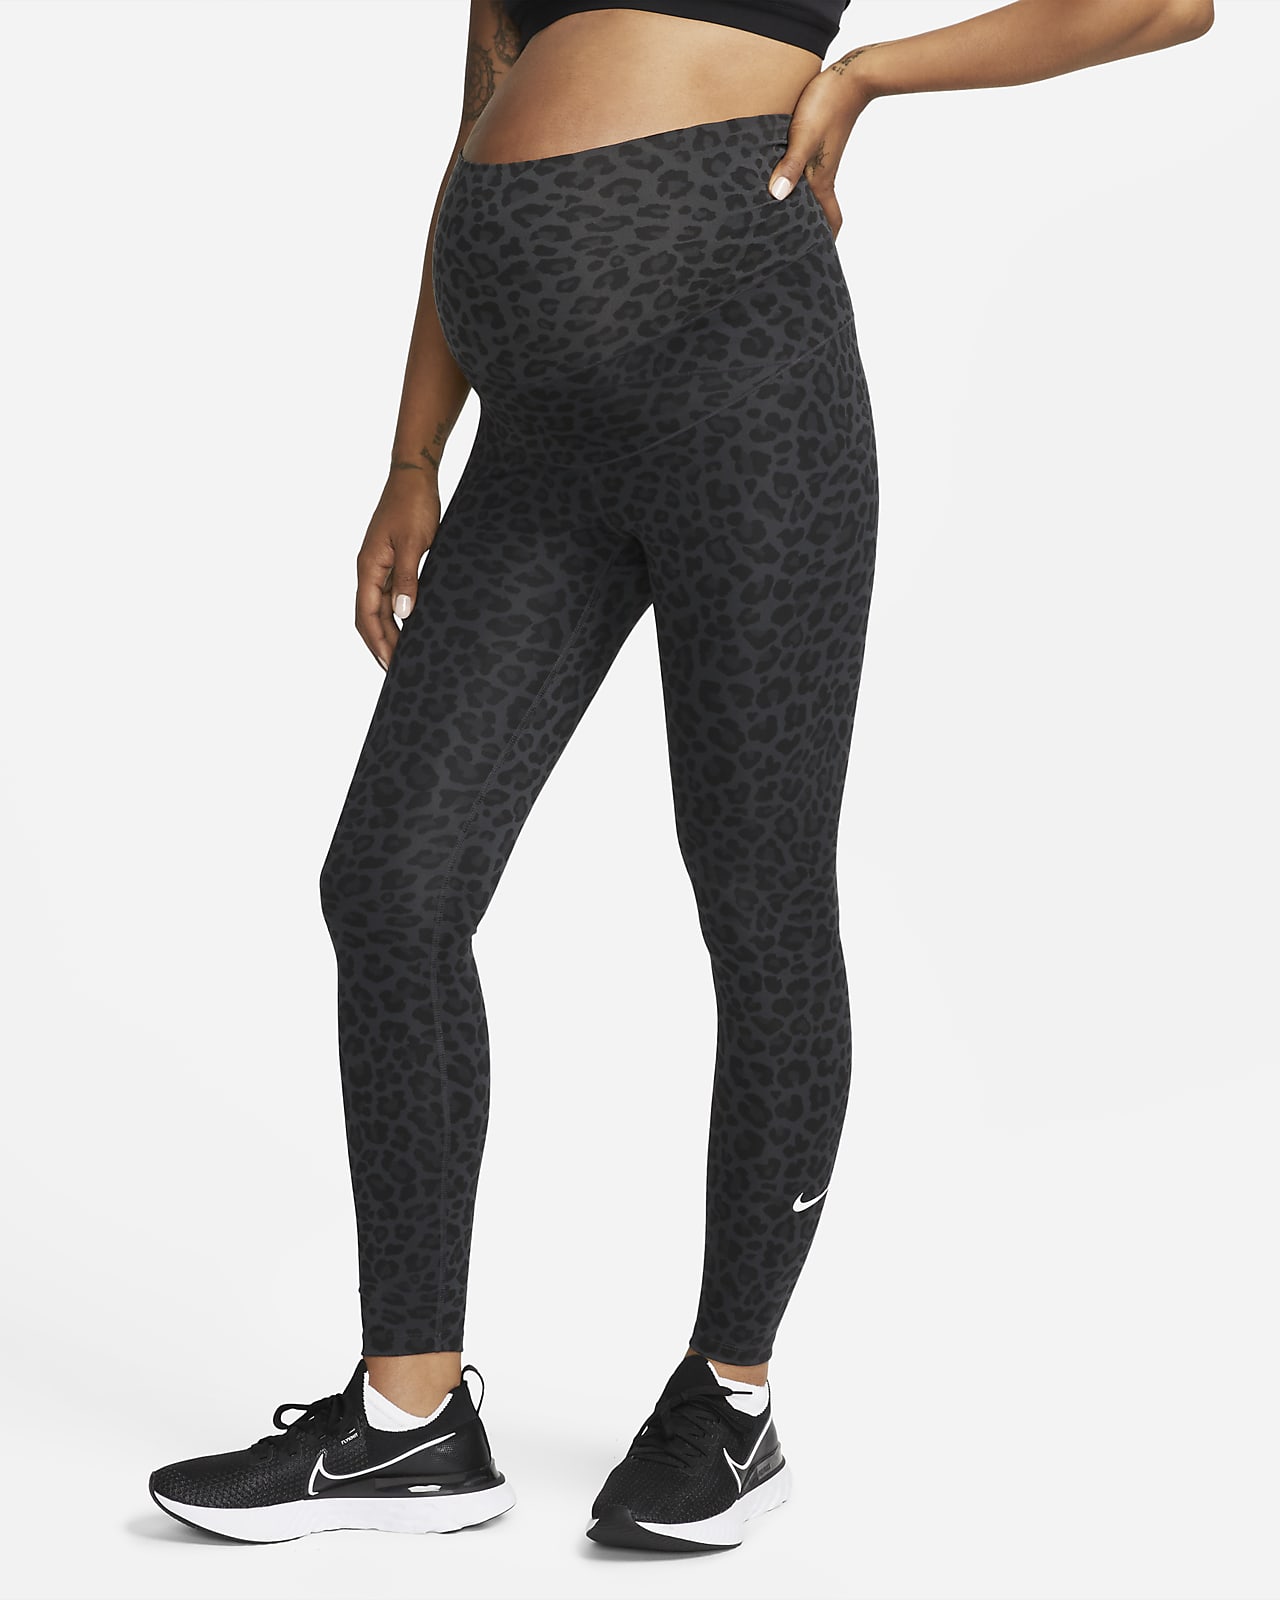 De Manoeuvreren huiswerk Nike One (M) Legging met hoge taille en luipaardprint voor dames ( zwangerschapskleding). Nike NL